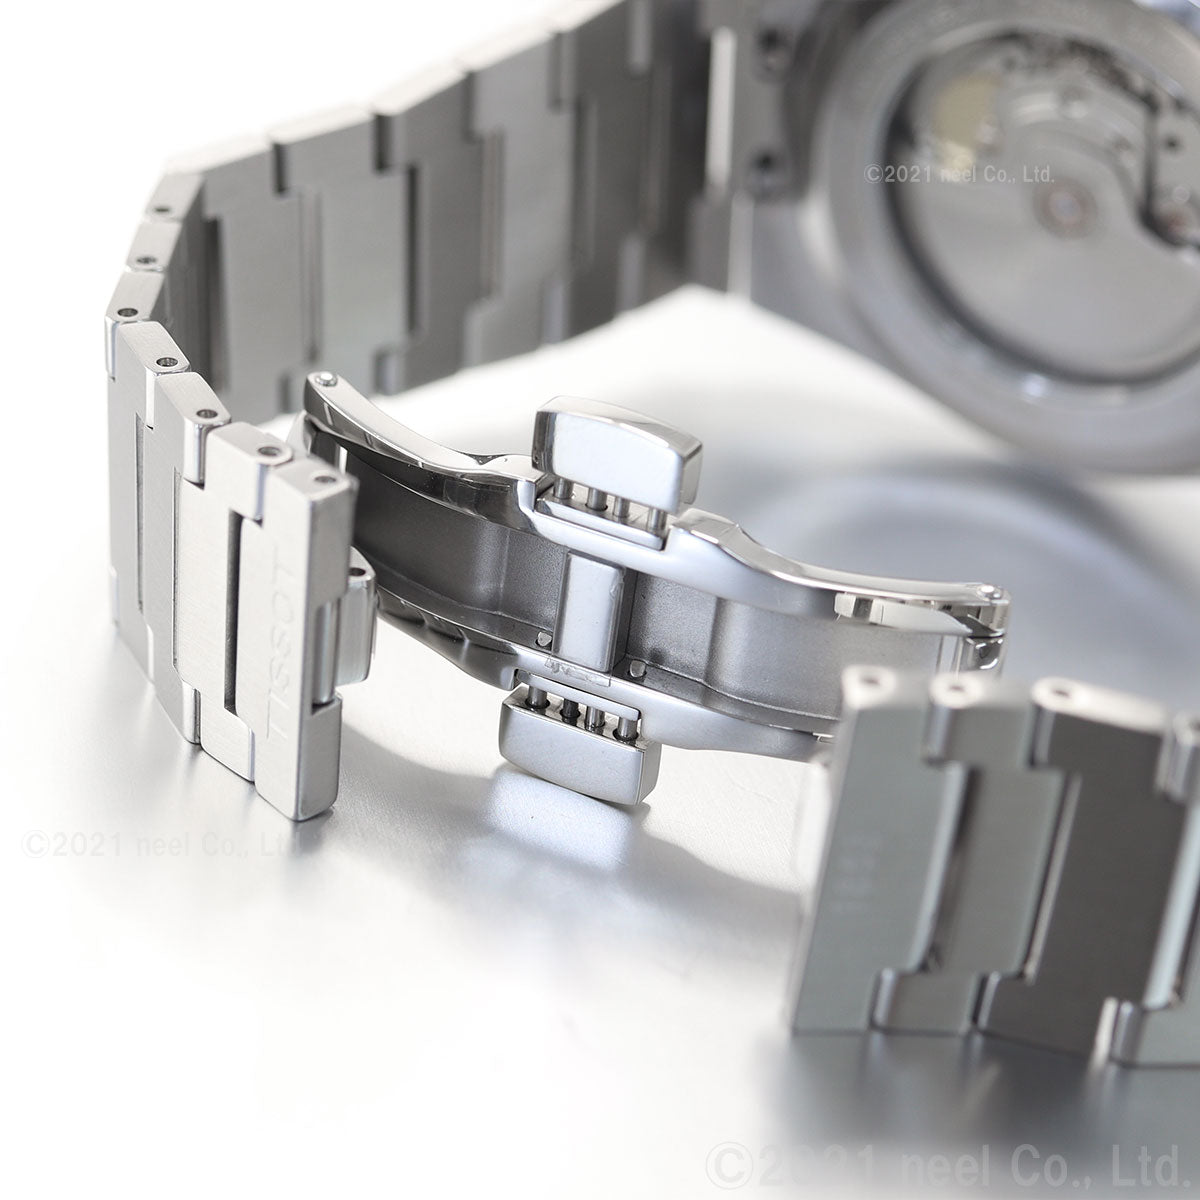 【36回分割手数料無料！】ティソ メンズ 腕時計 TISSOT PRX オートマティック 自動巻 T137.407.11.051.00 AUTOMATIC ブラック シルバー